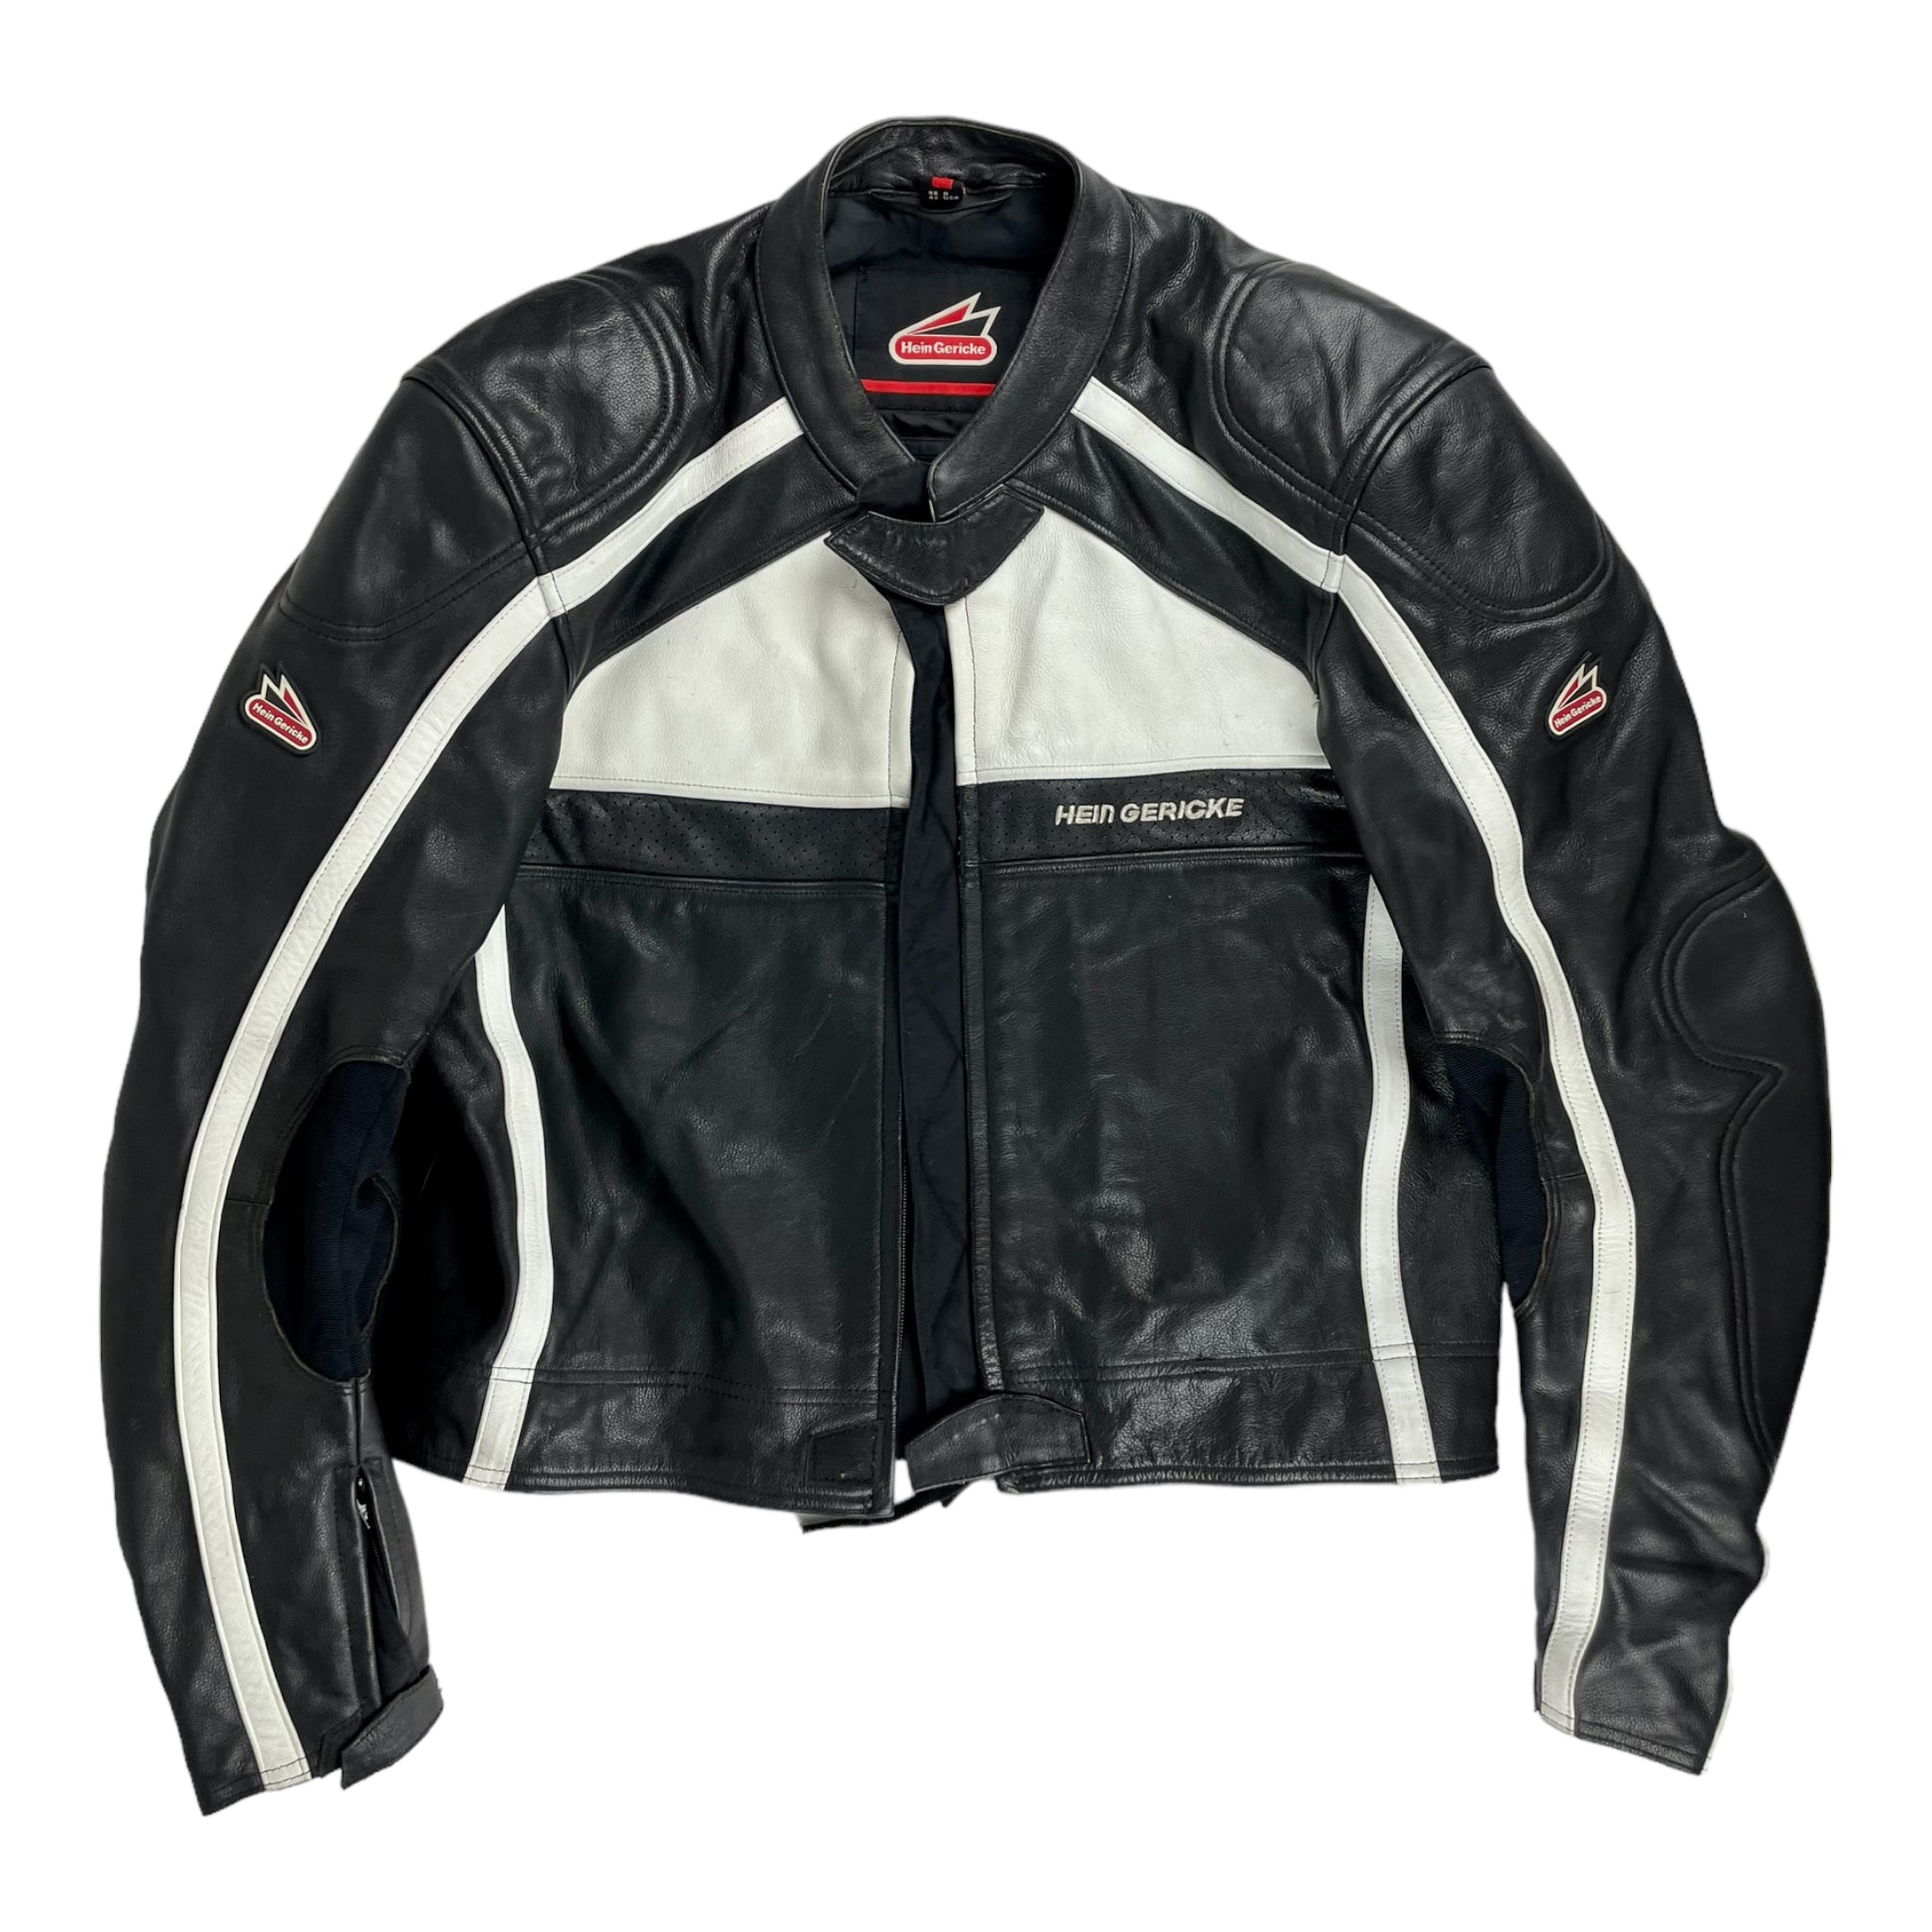 Vintage Motorcycle Jacket - Restorecph